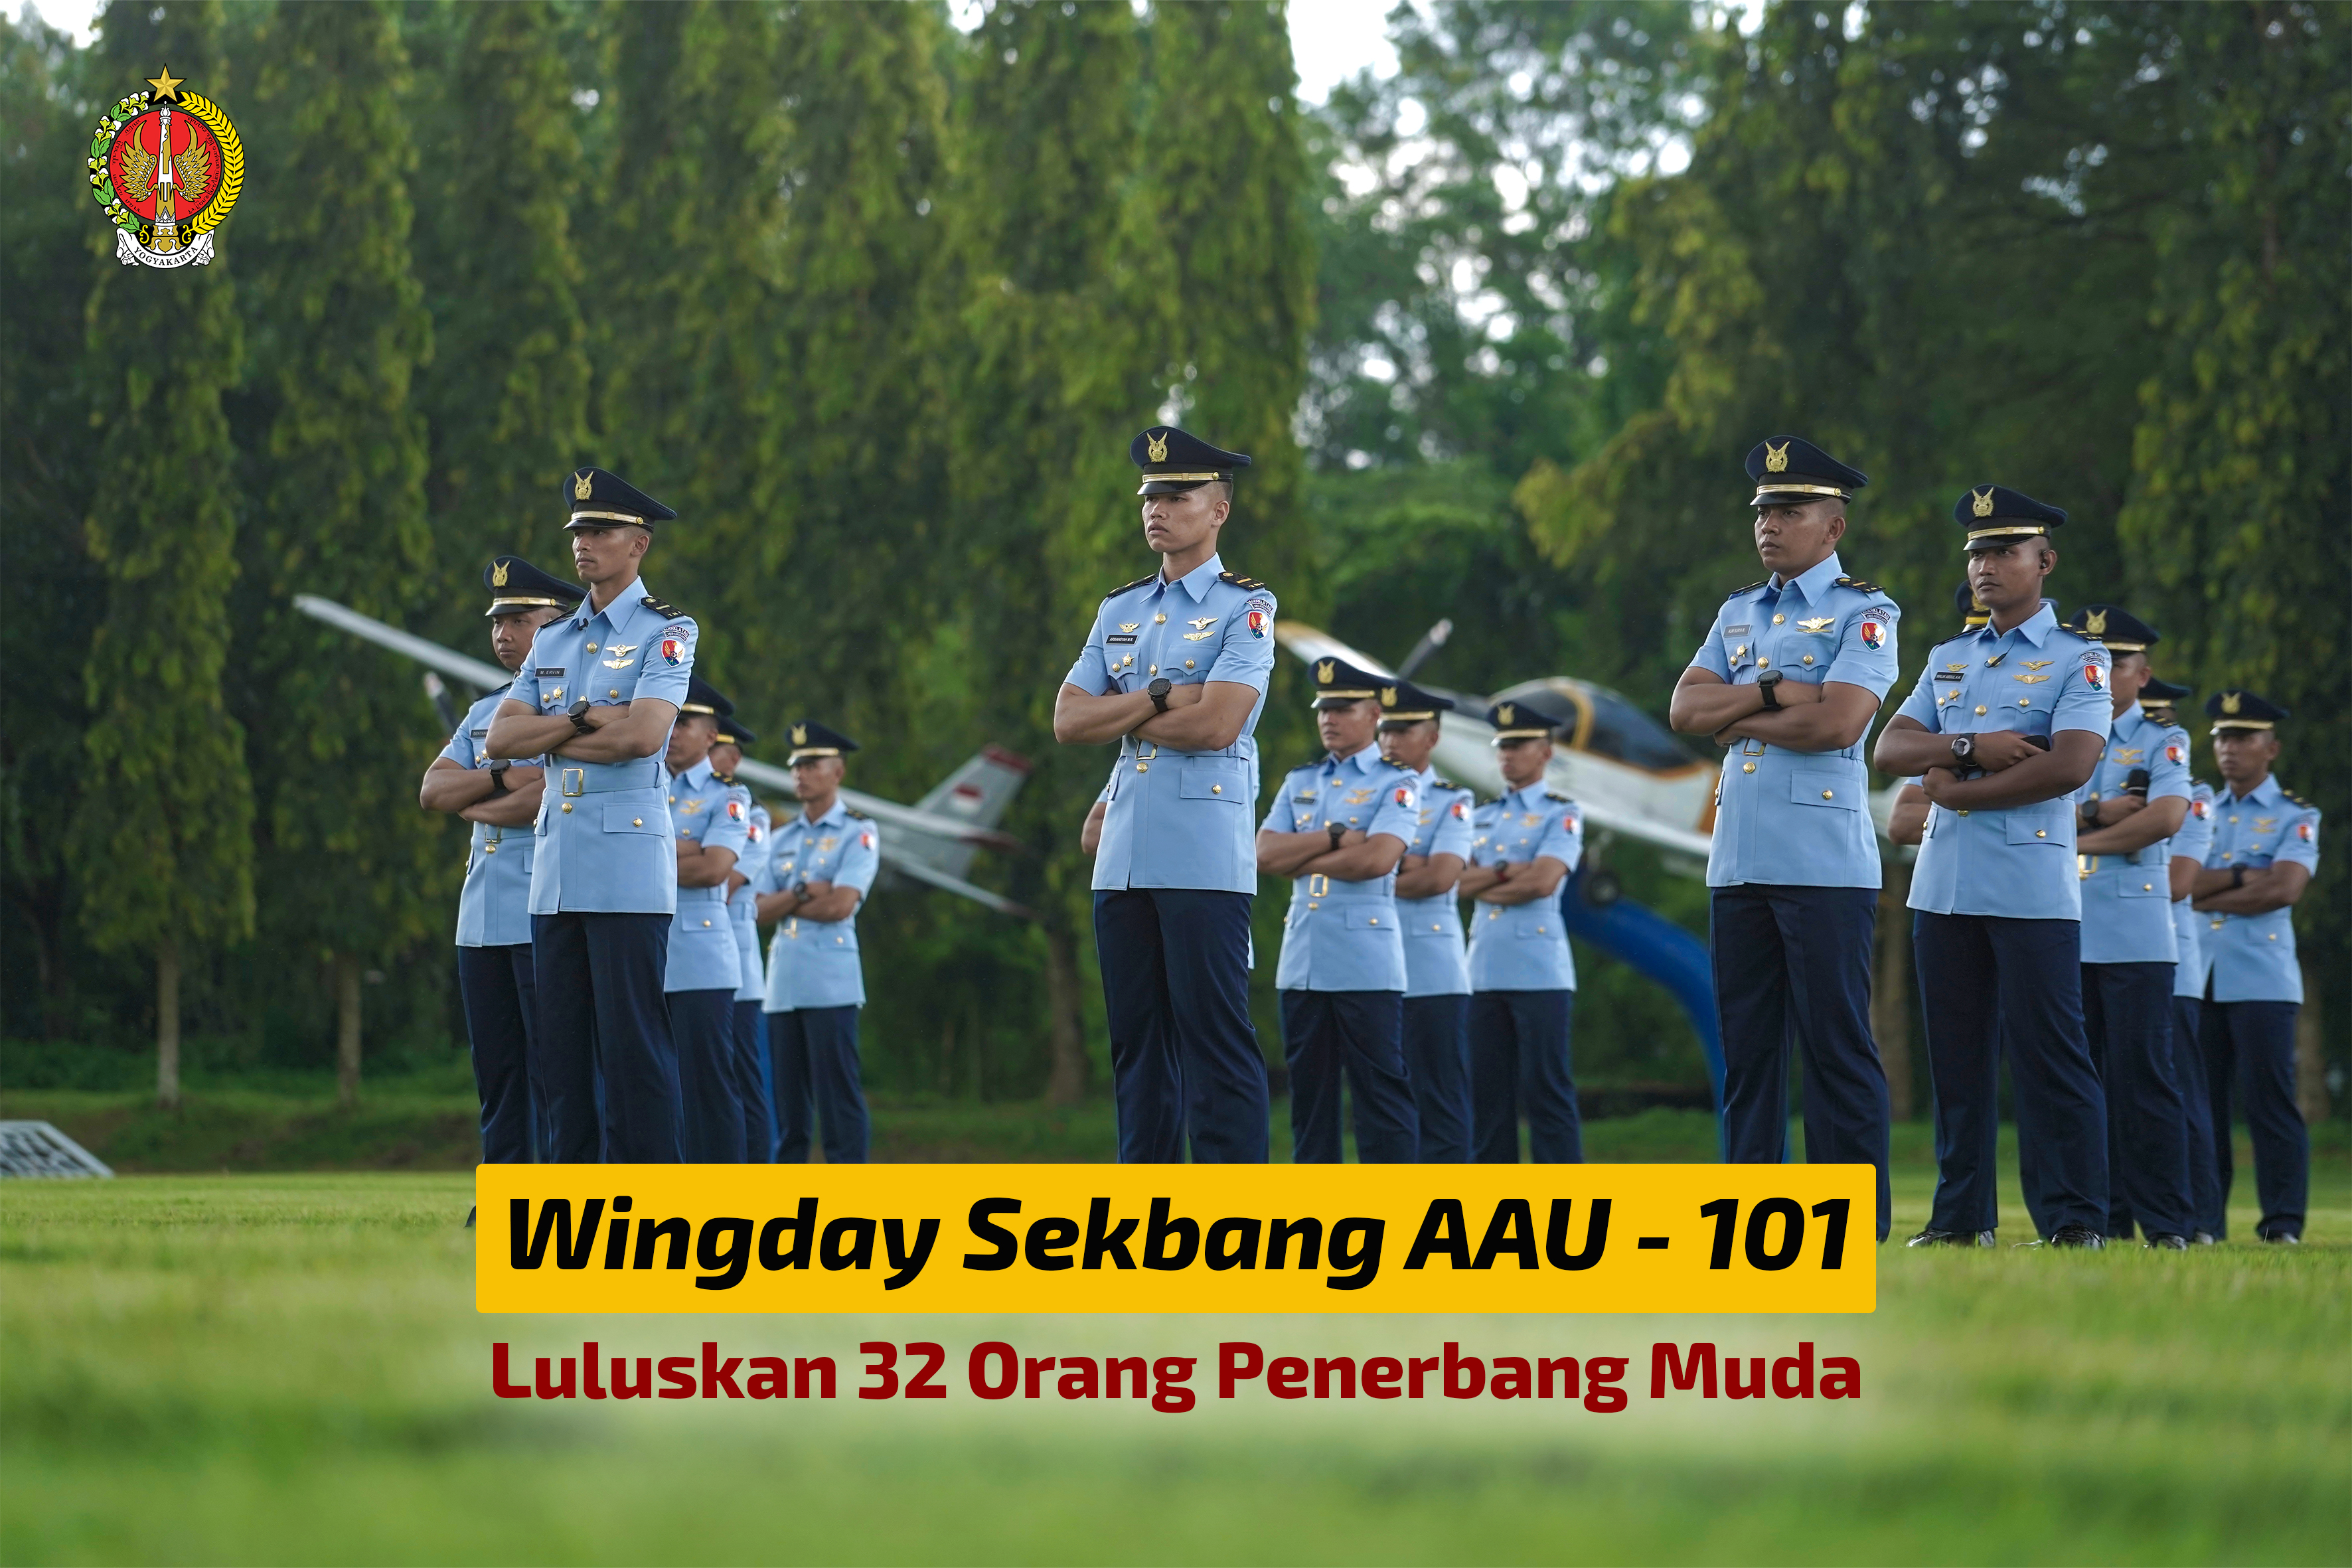 Wingday Sekbang AAU - 101 Luluskan 32 Orang Penerbang Muda